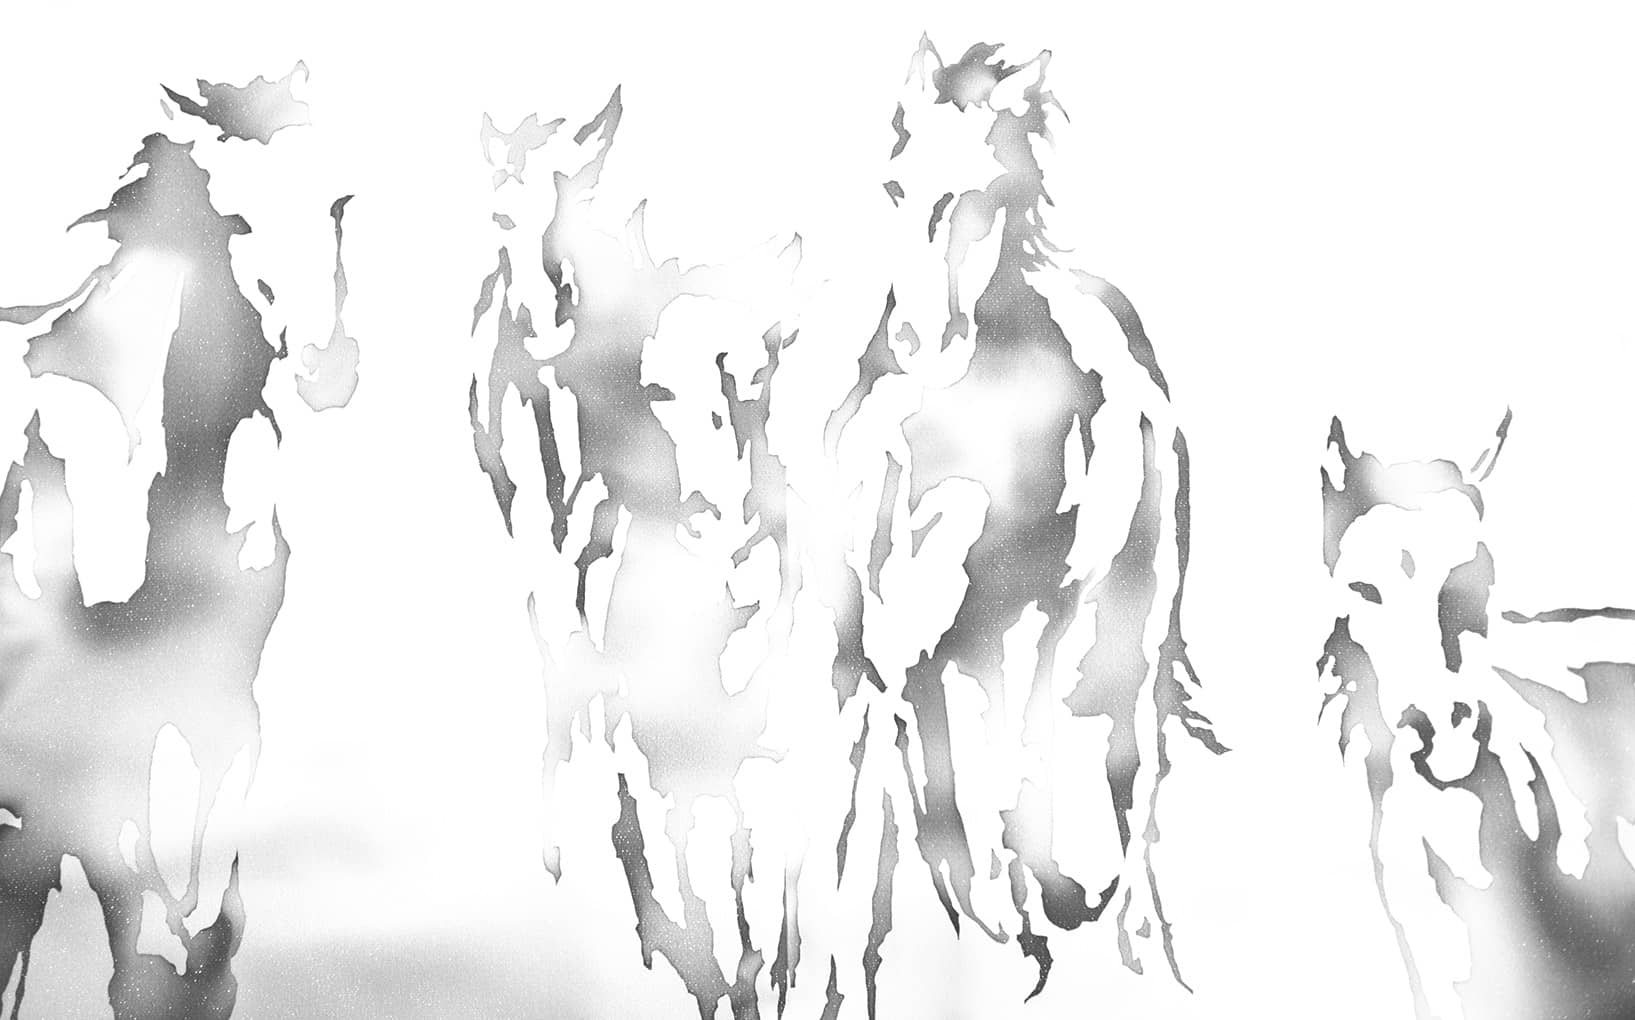 銀座いわきや 伝統工芸品 臈纈染 ろうけつ染 馬柄の着物 訪問着 坂東牧場